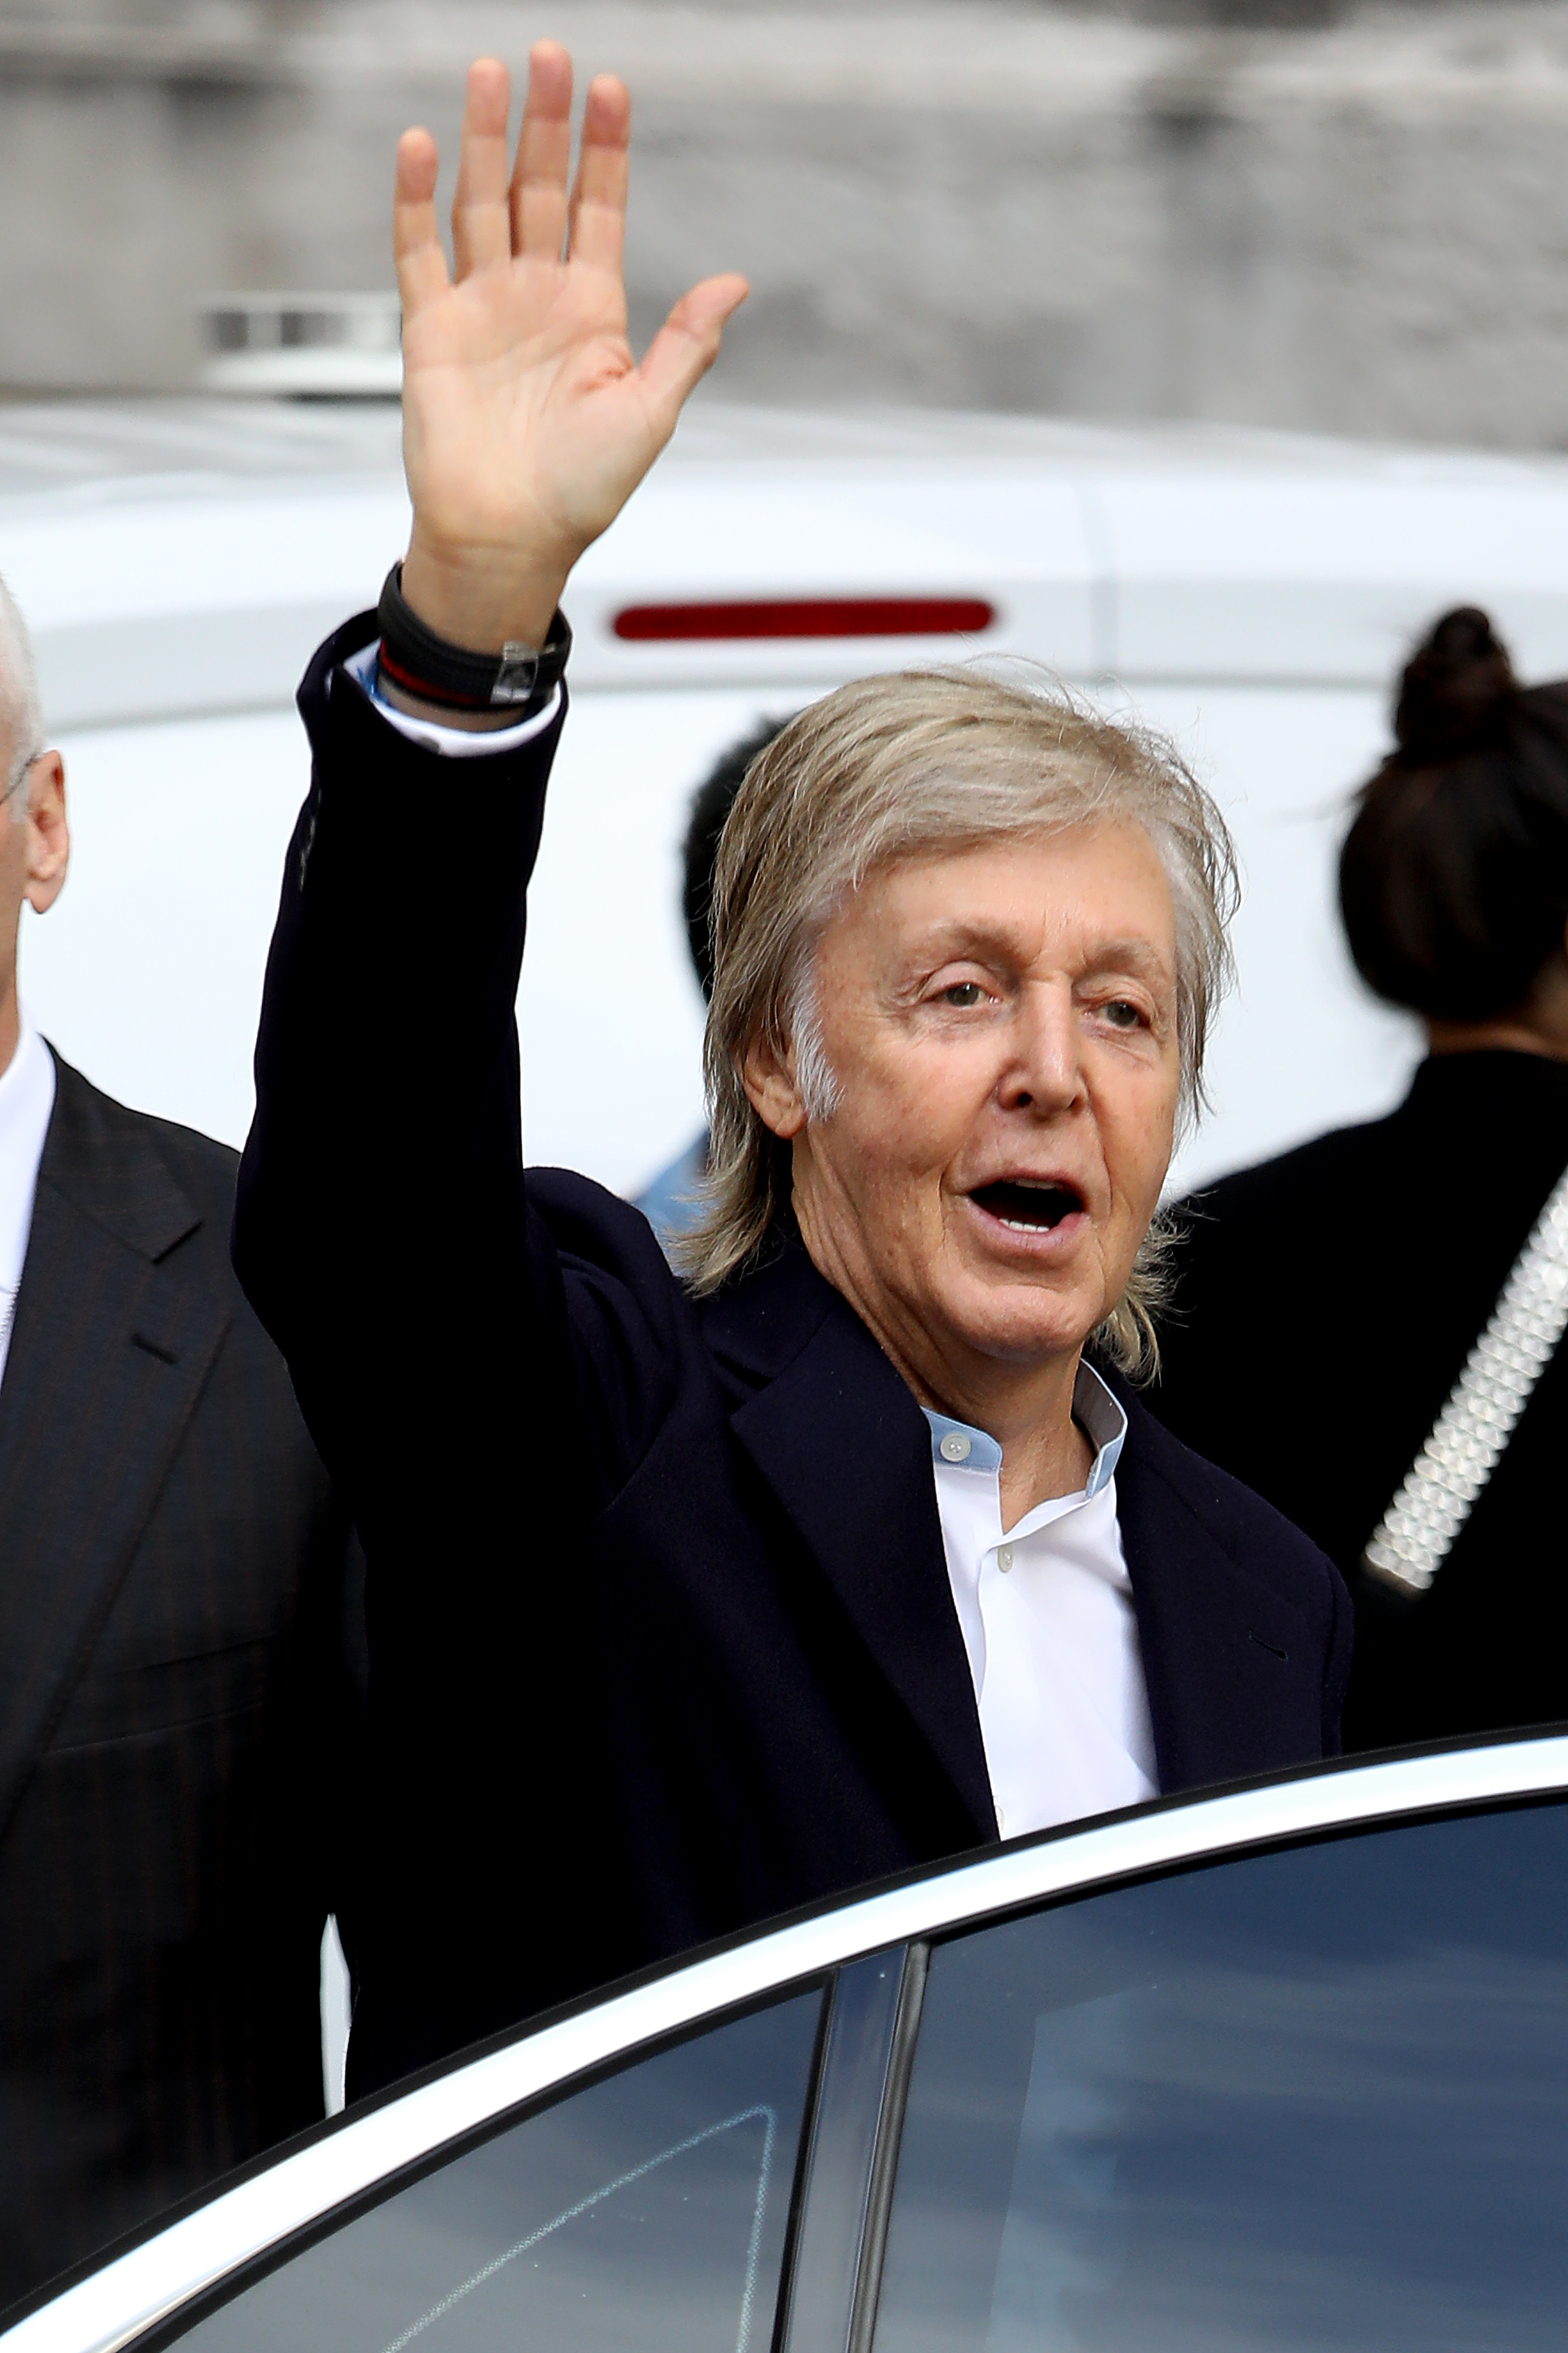 Paul McCartney en el desfile Stella McCartney Womenswear Primavera/Verano 2020 como parte de la Semana de la Moda de París en París, Francia, el 30 de septiembre de 2019. | Fuente: Getty Images